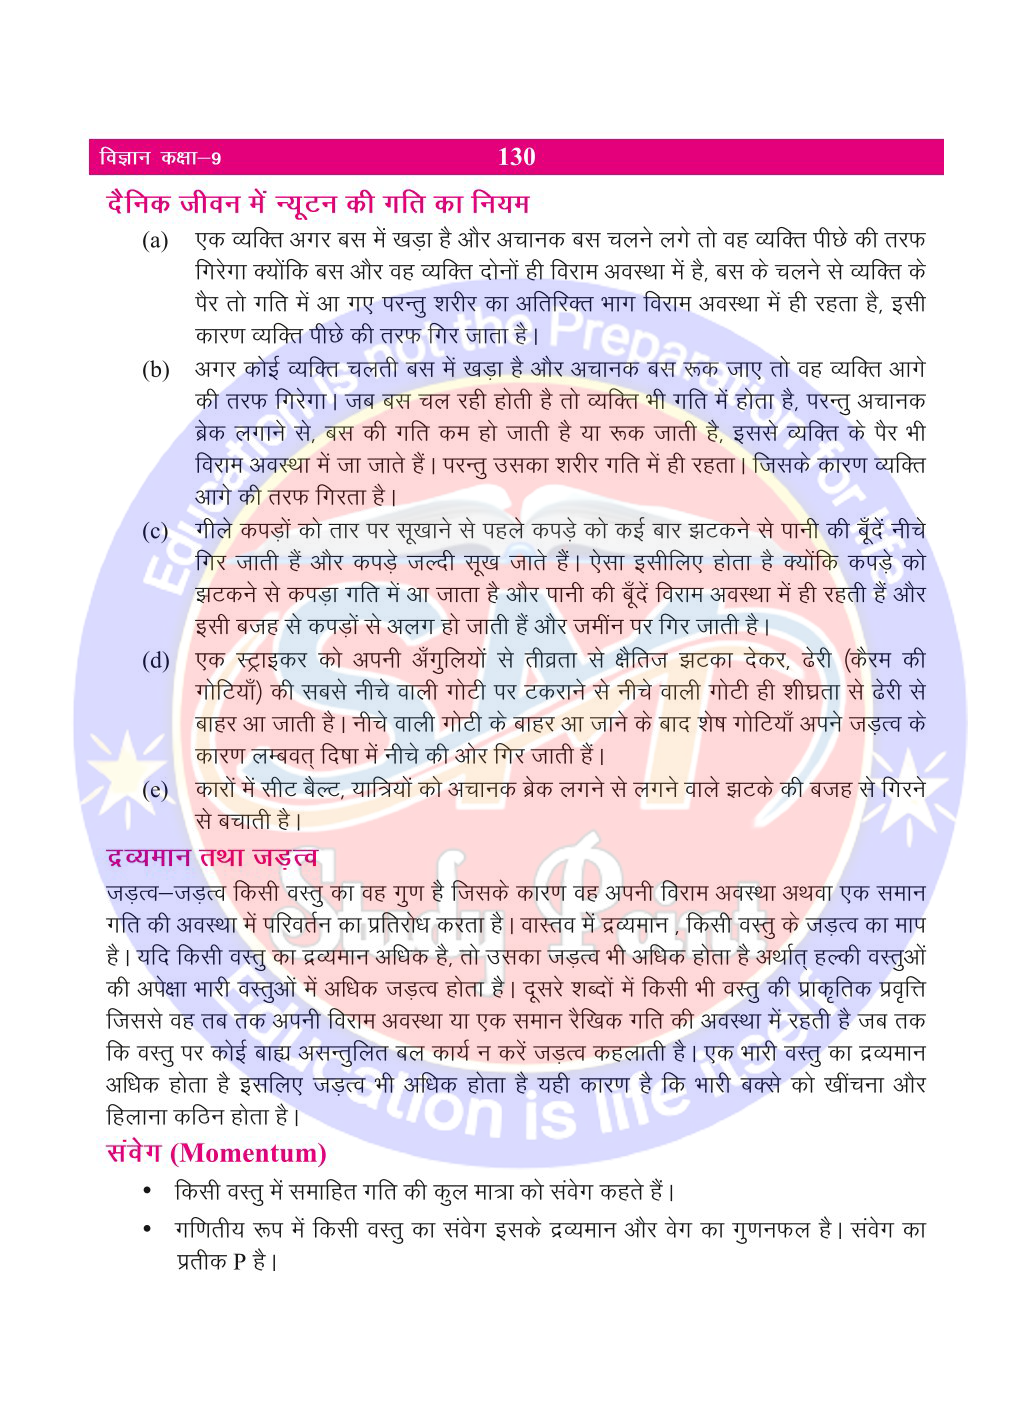 Bihar Board Class 9th Physics  Force and Law of Motion  Class 9 Physics Rivision Notes PDF  बल तथा गति के नियम   बिहार बोर्ड क्लास 9वीं भौतिकी नोट्स  कक्षा 9 भौतिकी हिंदी में नोट्स